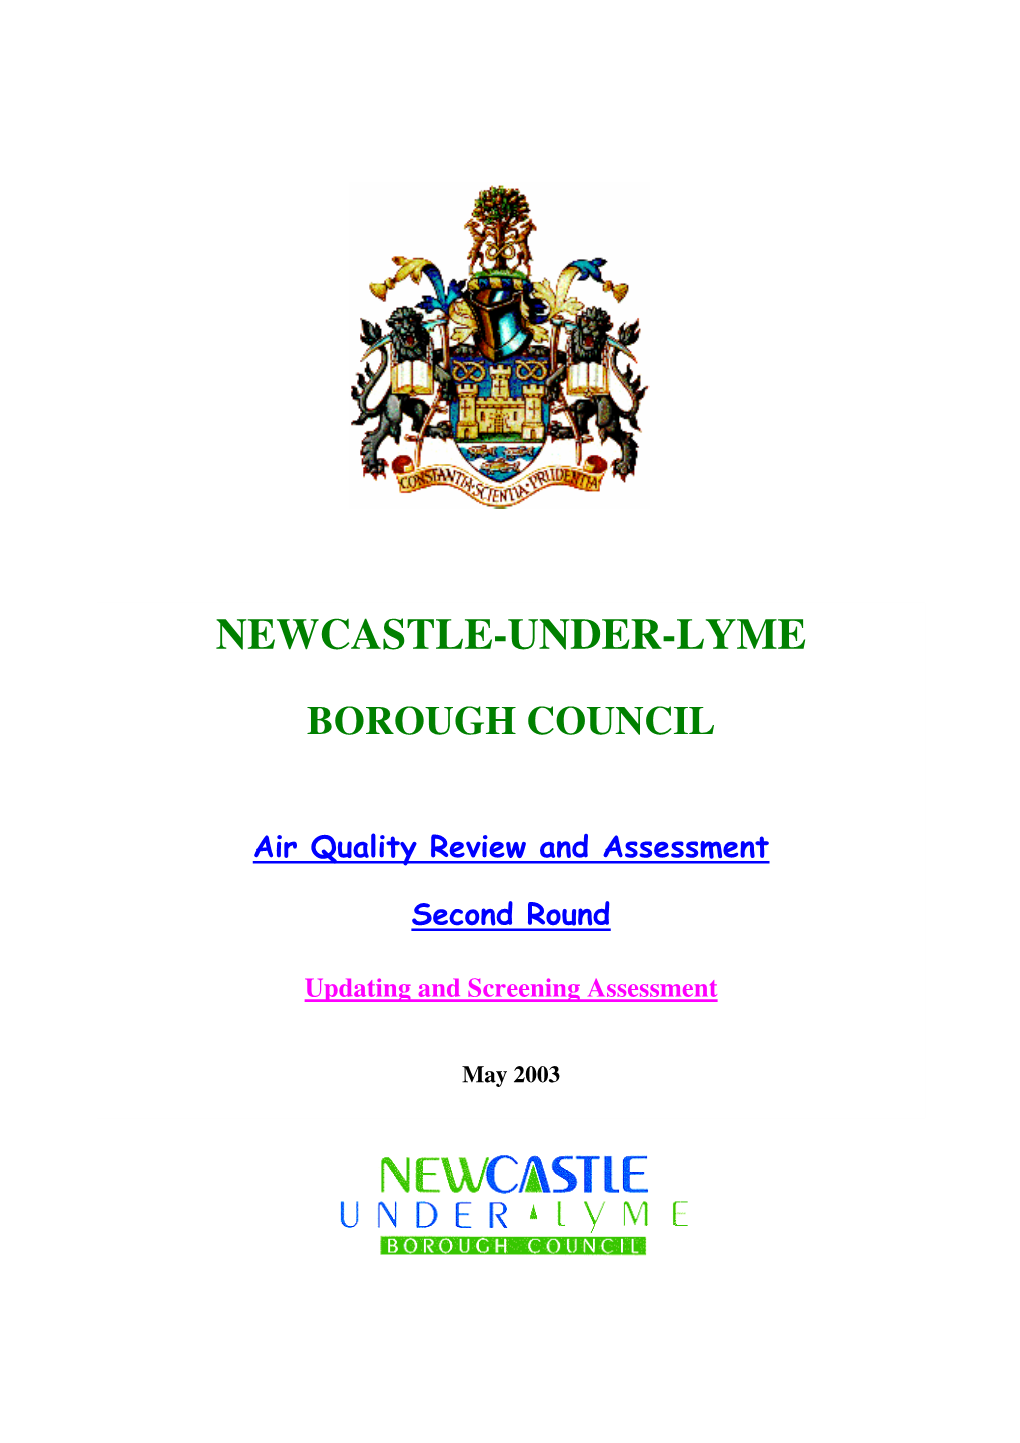 Newcastle-Under-Lyme Borough Council, Civic Offices, Merrial Street, Newcastle-Under-Lyme, Staffordshire, ST5 2AG